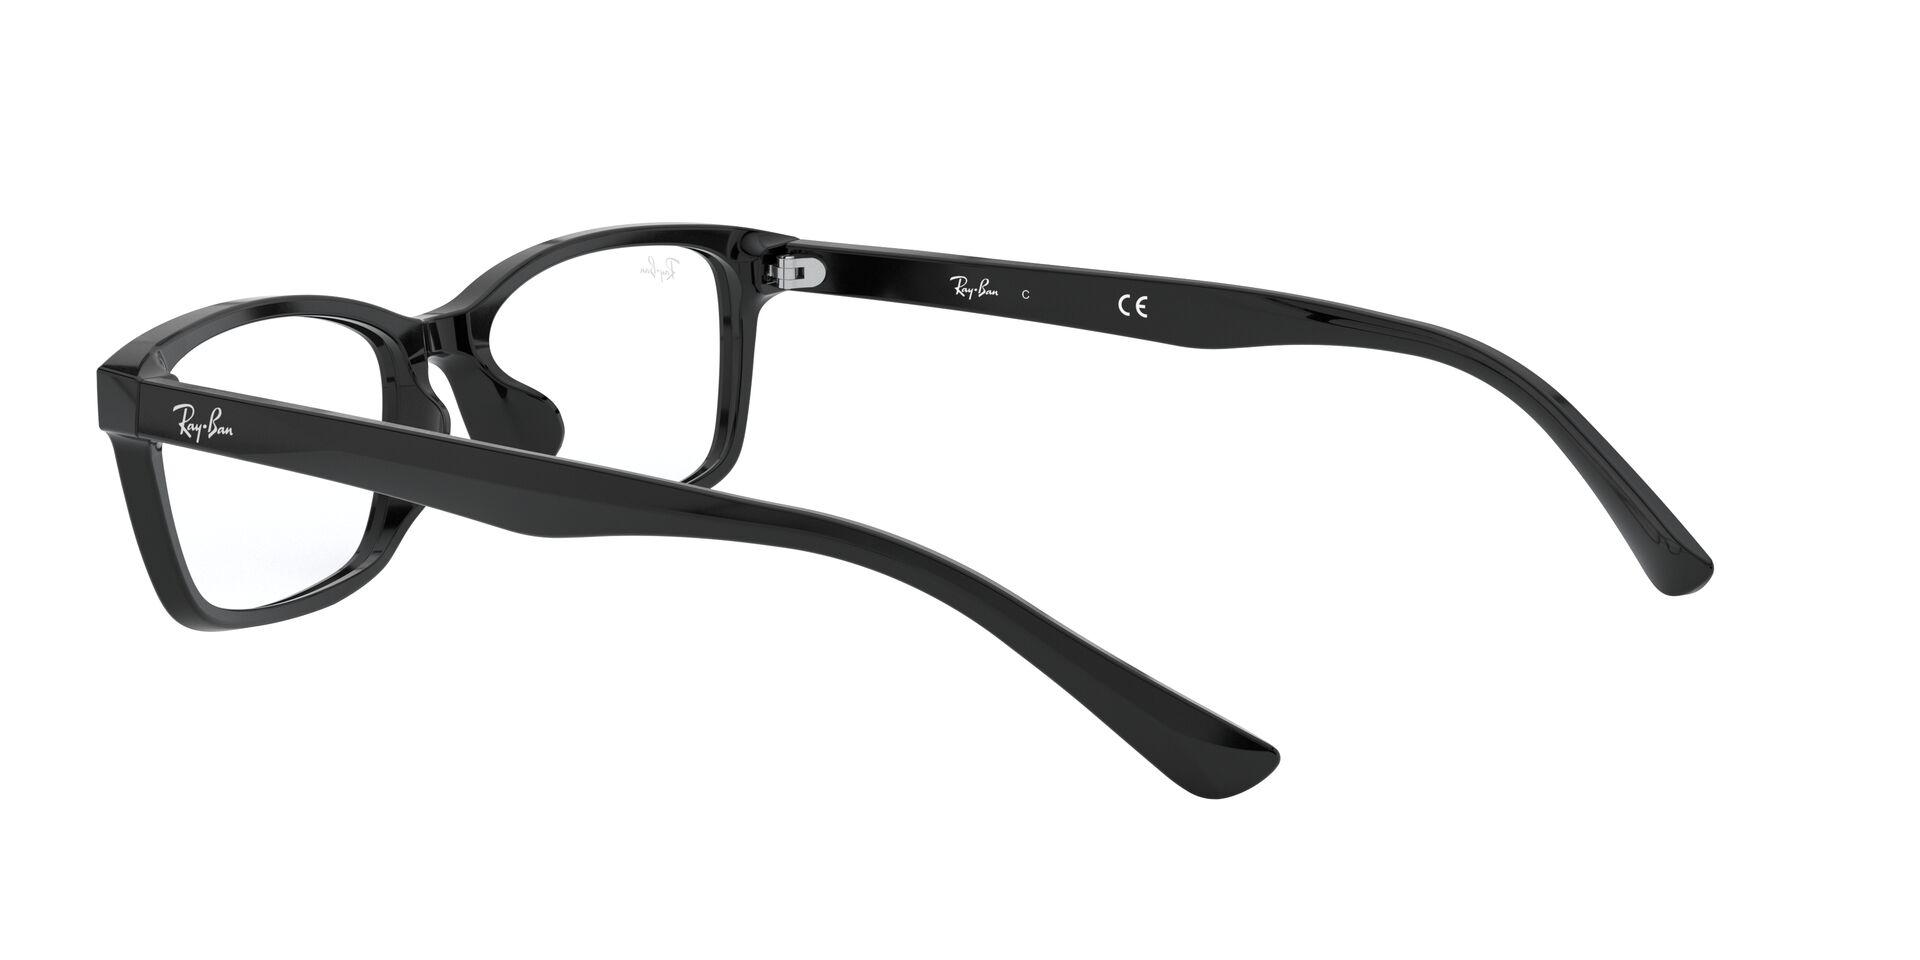 Mắt Kính Ray-Ban  - RX5318D 2000 -Eyeglasses